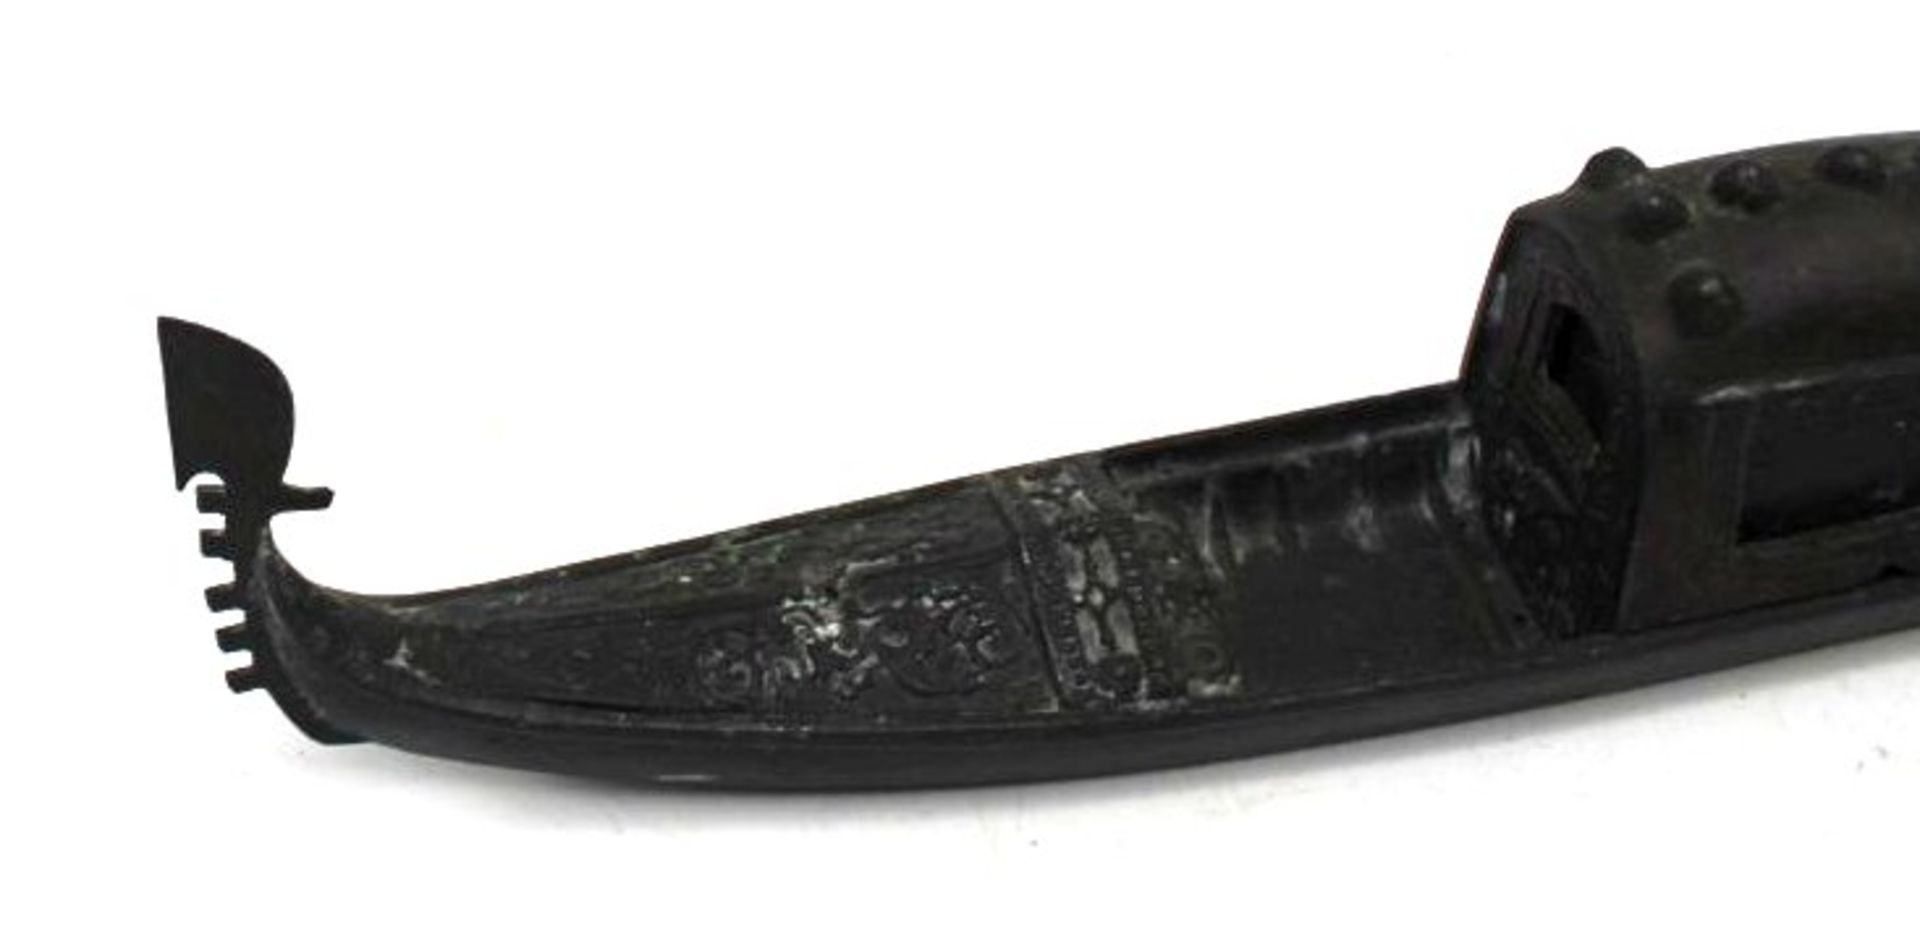 gr. schwere venezianische Gondel aus Metall, bei Gondoliere fehlt das Ruder, Altersspuren, L-30cm, - Image 3 of 5